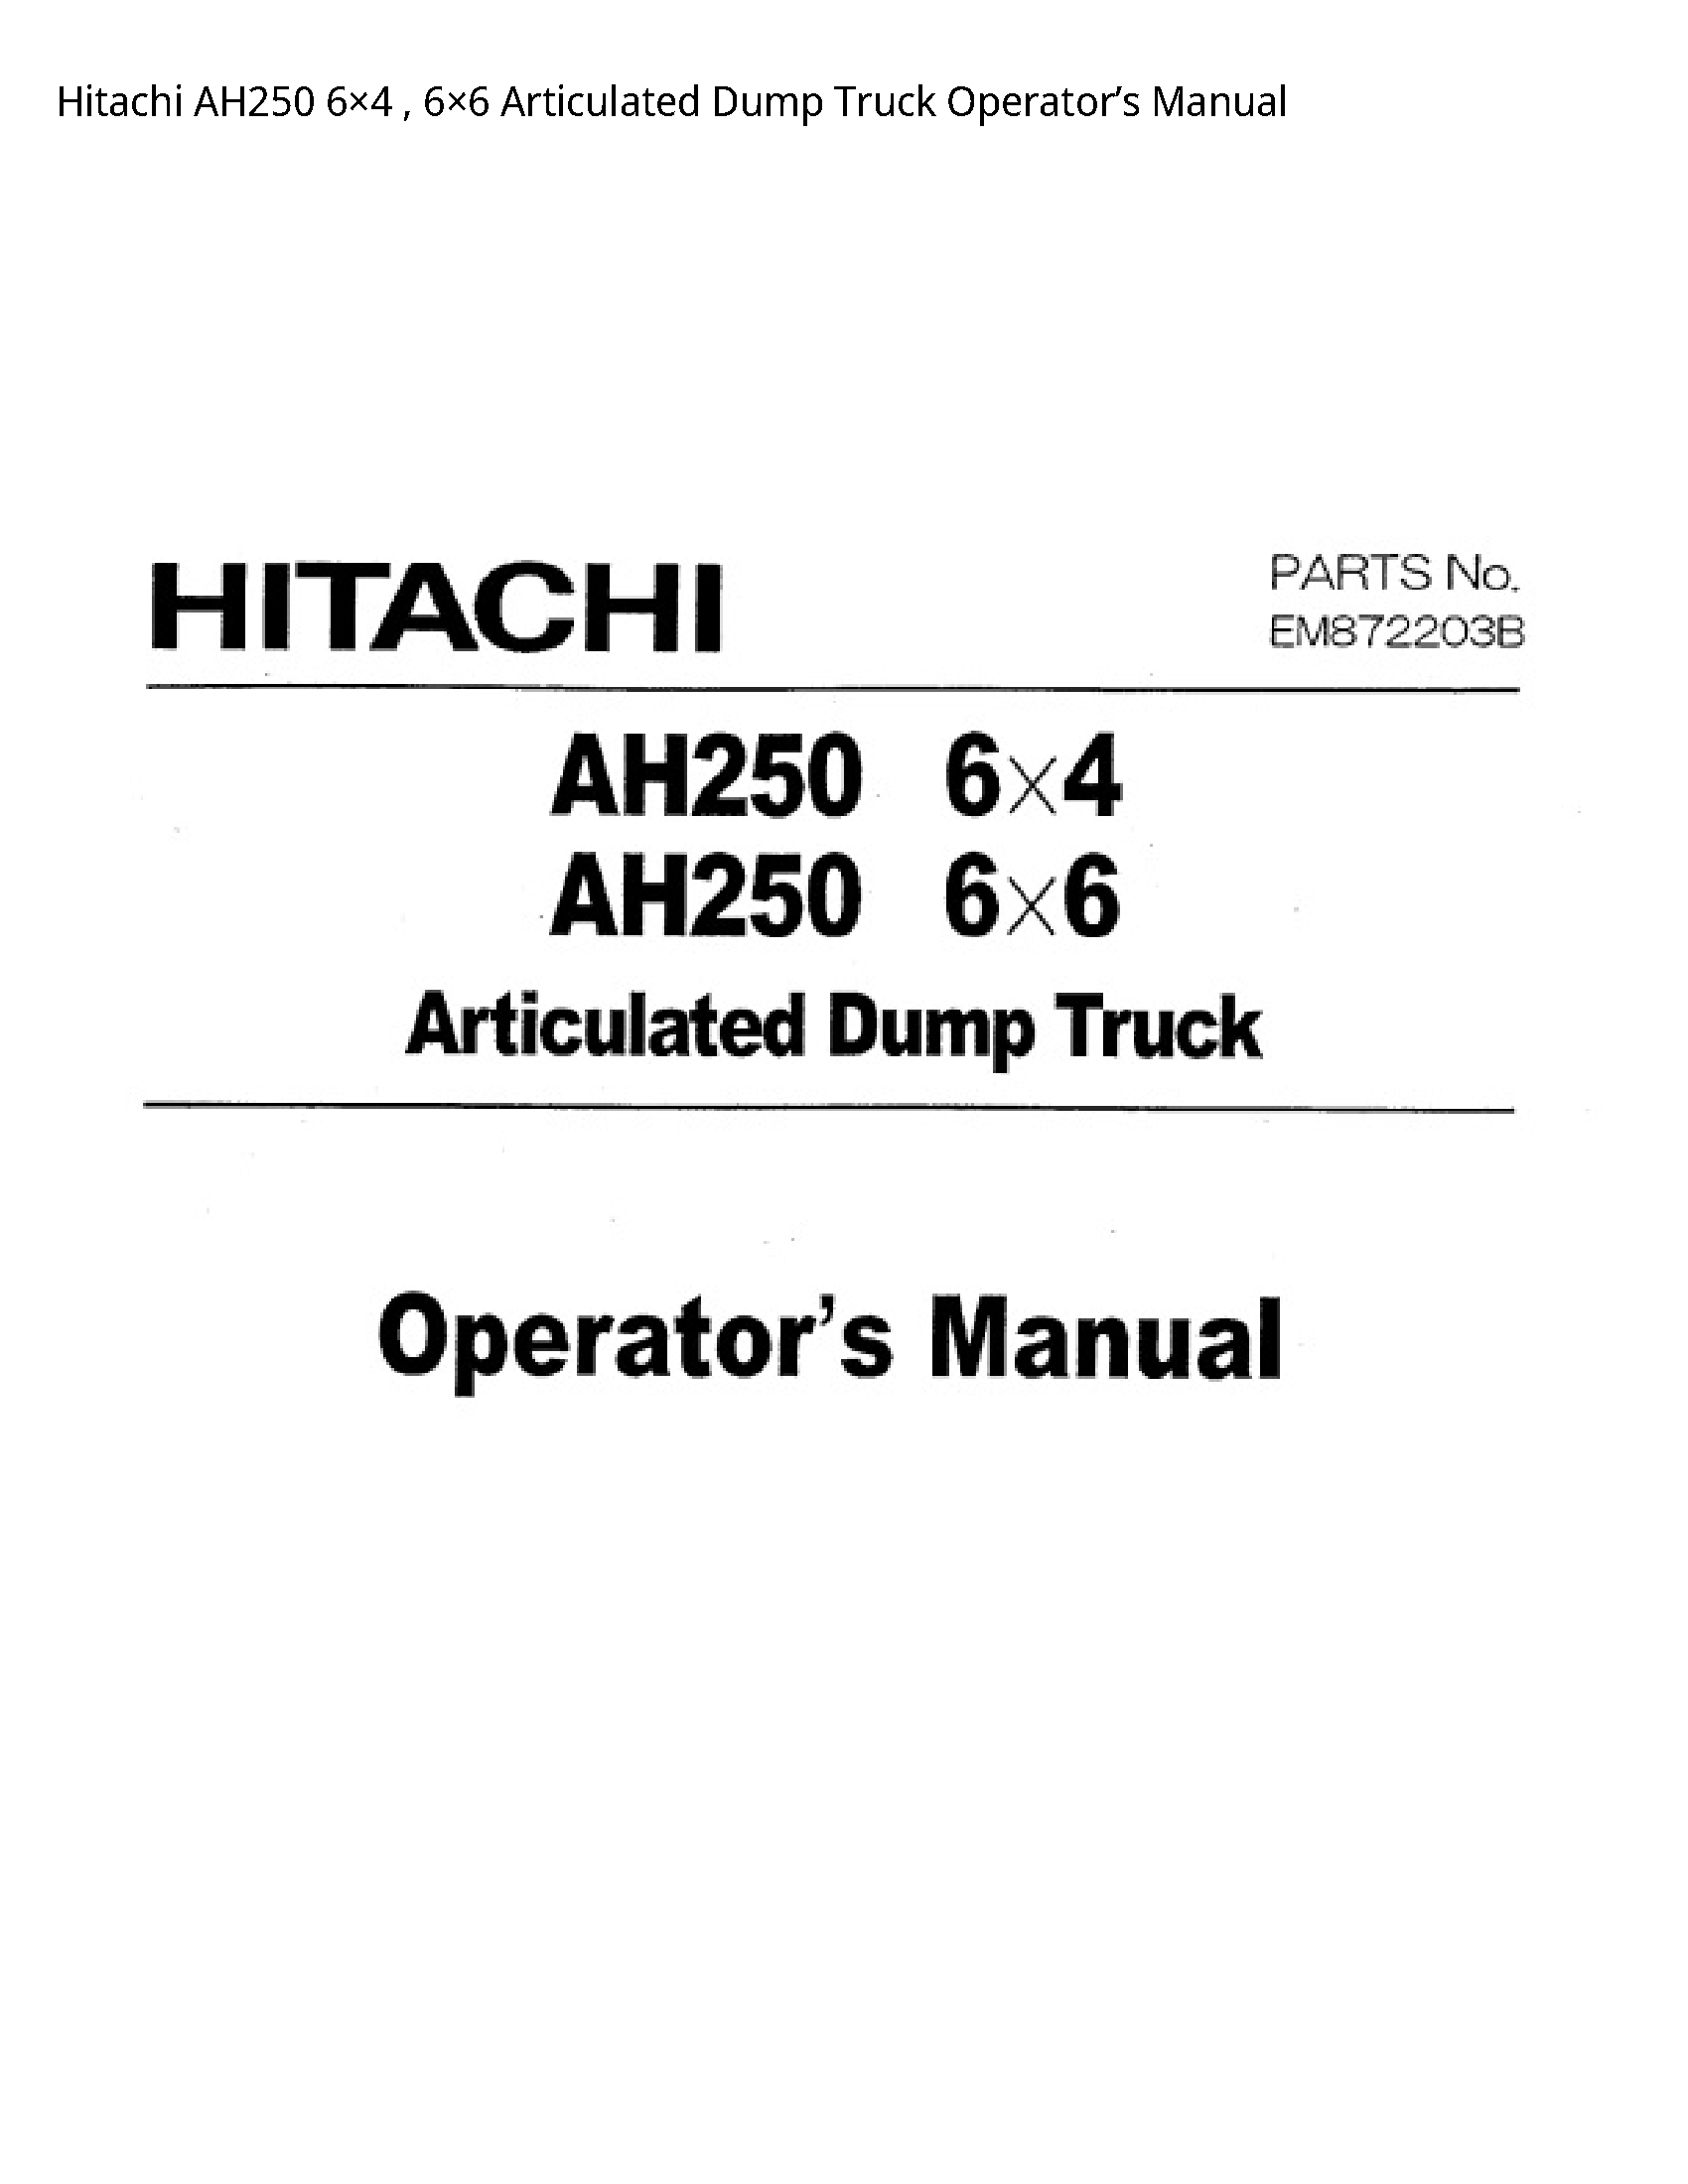 Hitachi AH250 Articulated Dump Truck Operator’s manual